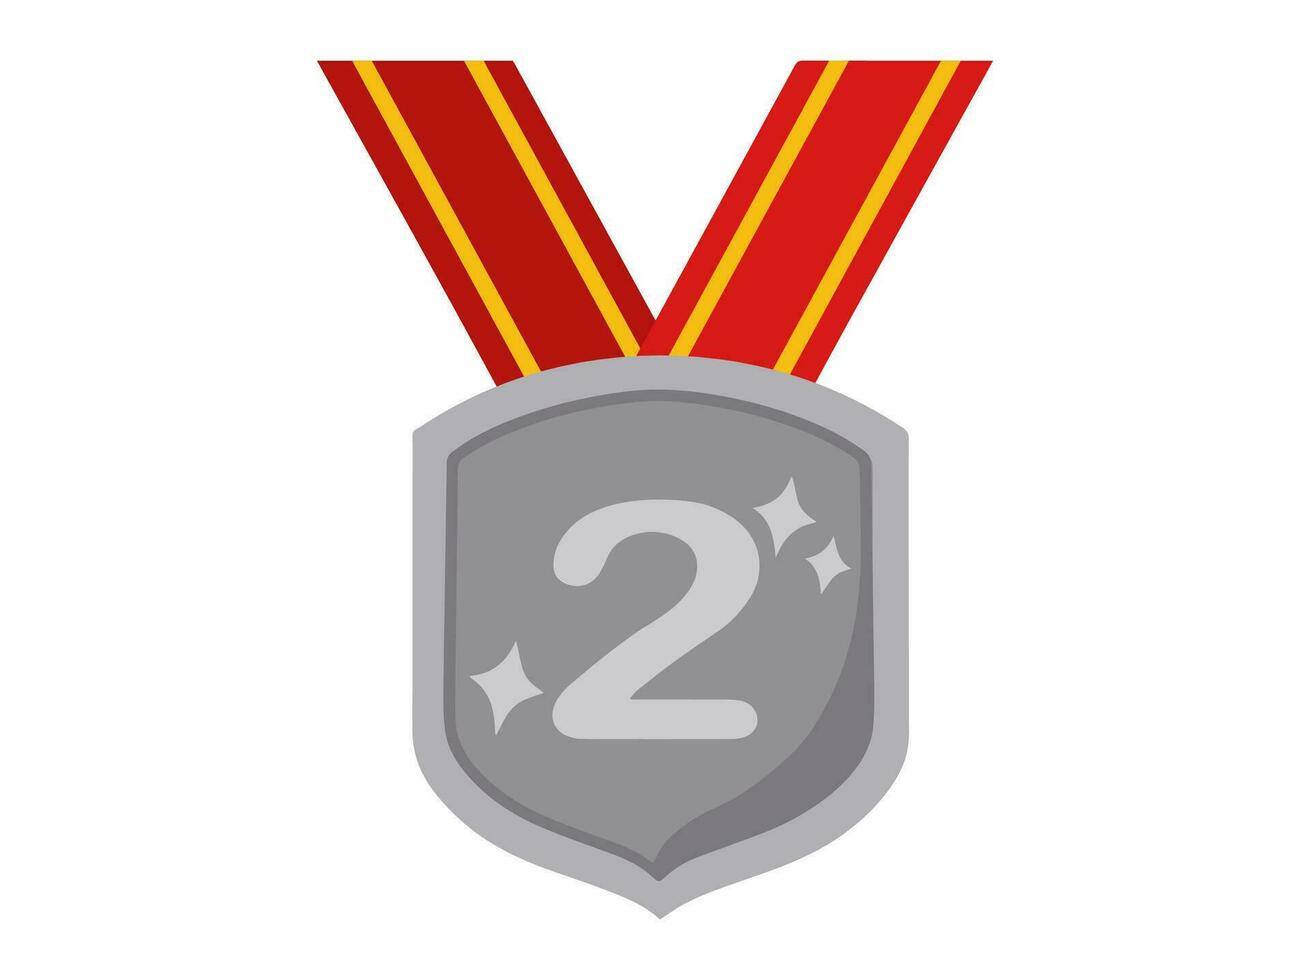 2 ° posto argento medaglia illustrazione vettore